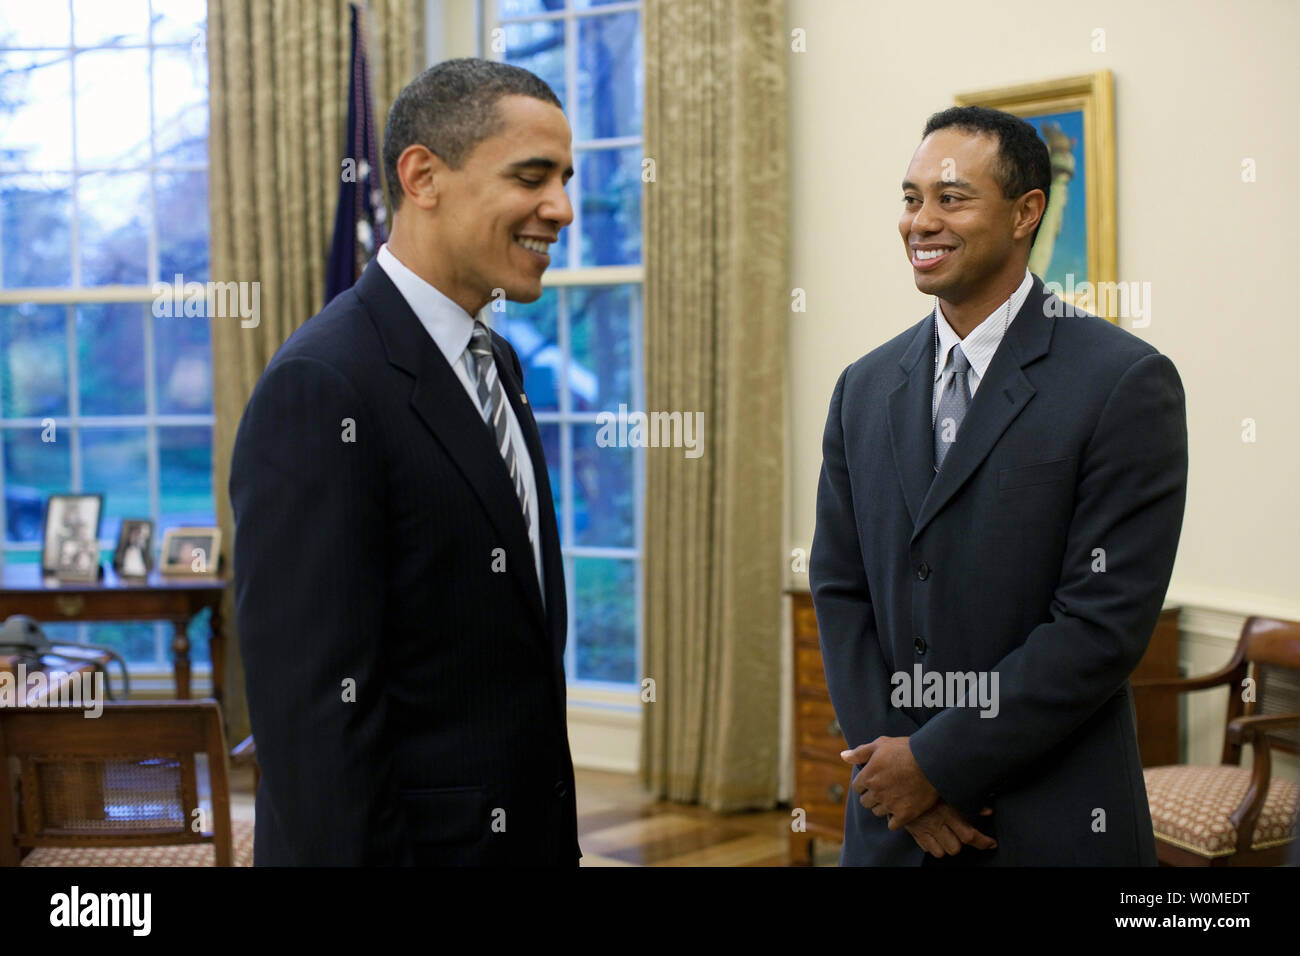 Us-Präsident Barack Obama (L) grüsst professioneller Golfspieler Tiger Woods im Oval Office des Weißen Hauses in Washington am 20. April 2009. Woods besucht das Weiße Haus Montag im Anschluss an eine Pressekonferenz für das AT&T National, das PGA Tour Woods Gastgeber im Congressional Country Club 29. Juni - 5. Juli. (UPI Foto/Pete Souza / Weiße Haus) Stockfoto